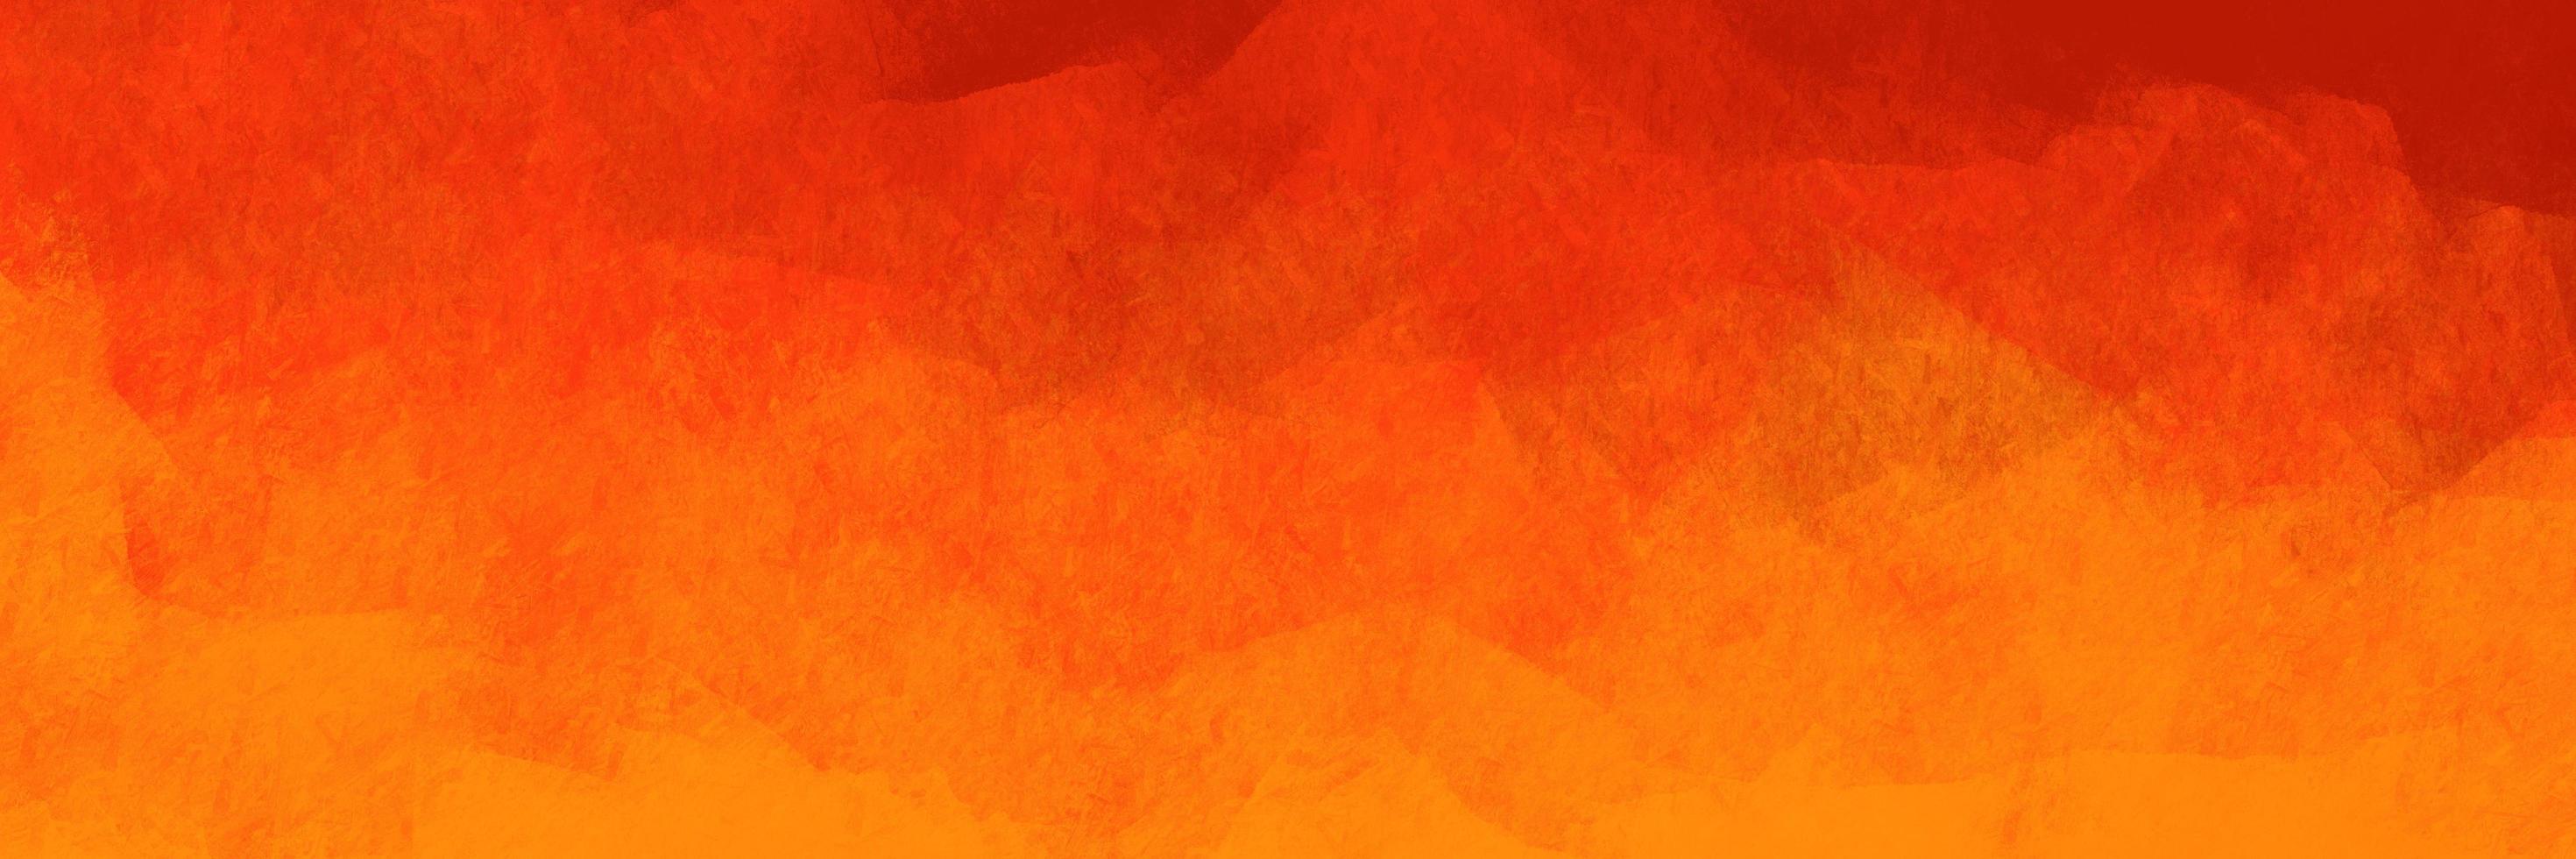 motif de fond abstrait brossé de couleur orangée sur le thème de la flamme. éléments de texture peints en orange pour un design créatif. photo